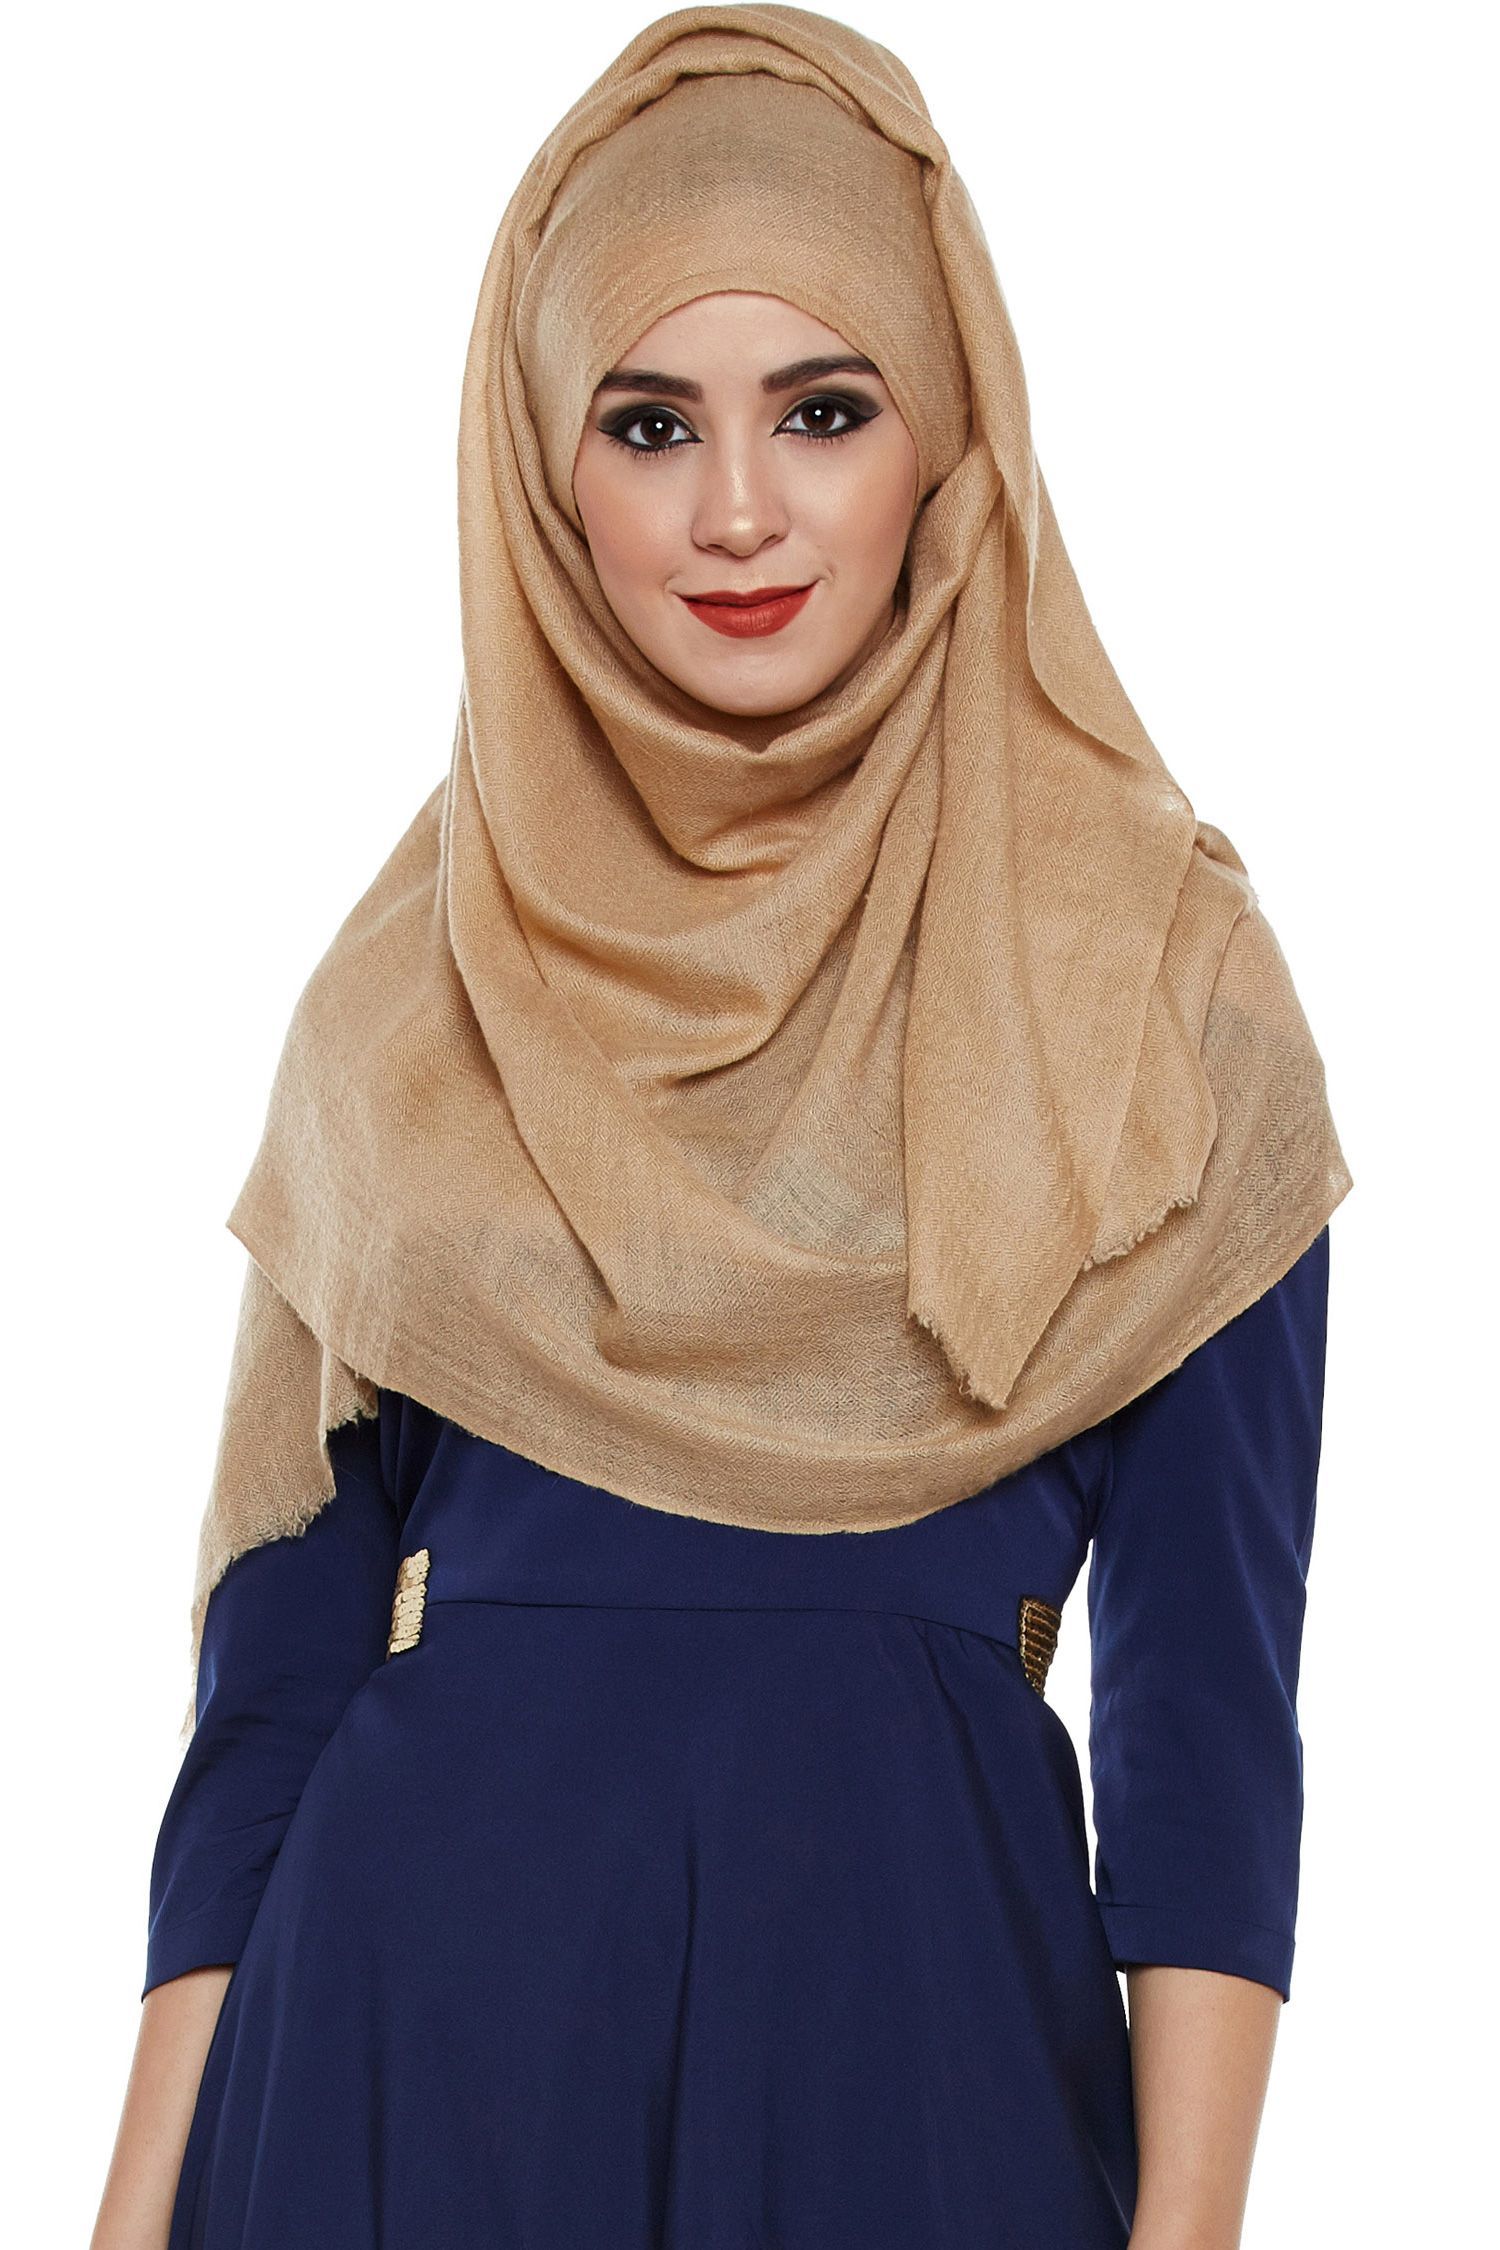 Mocha Pashmina Hijab | Handmade Cashmere Head Scarf